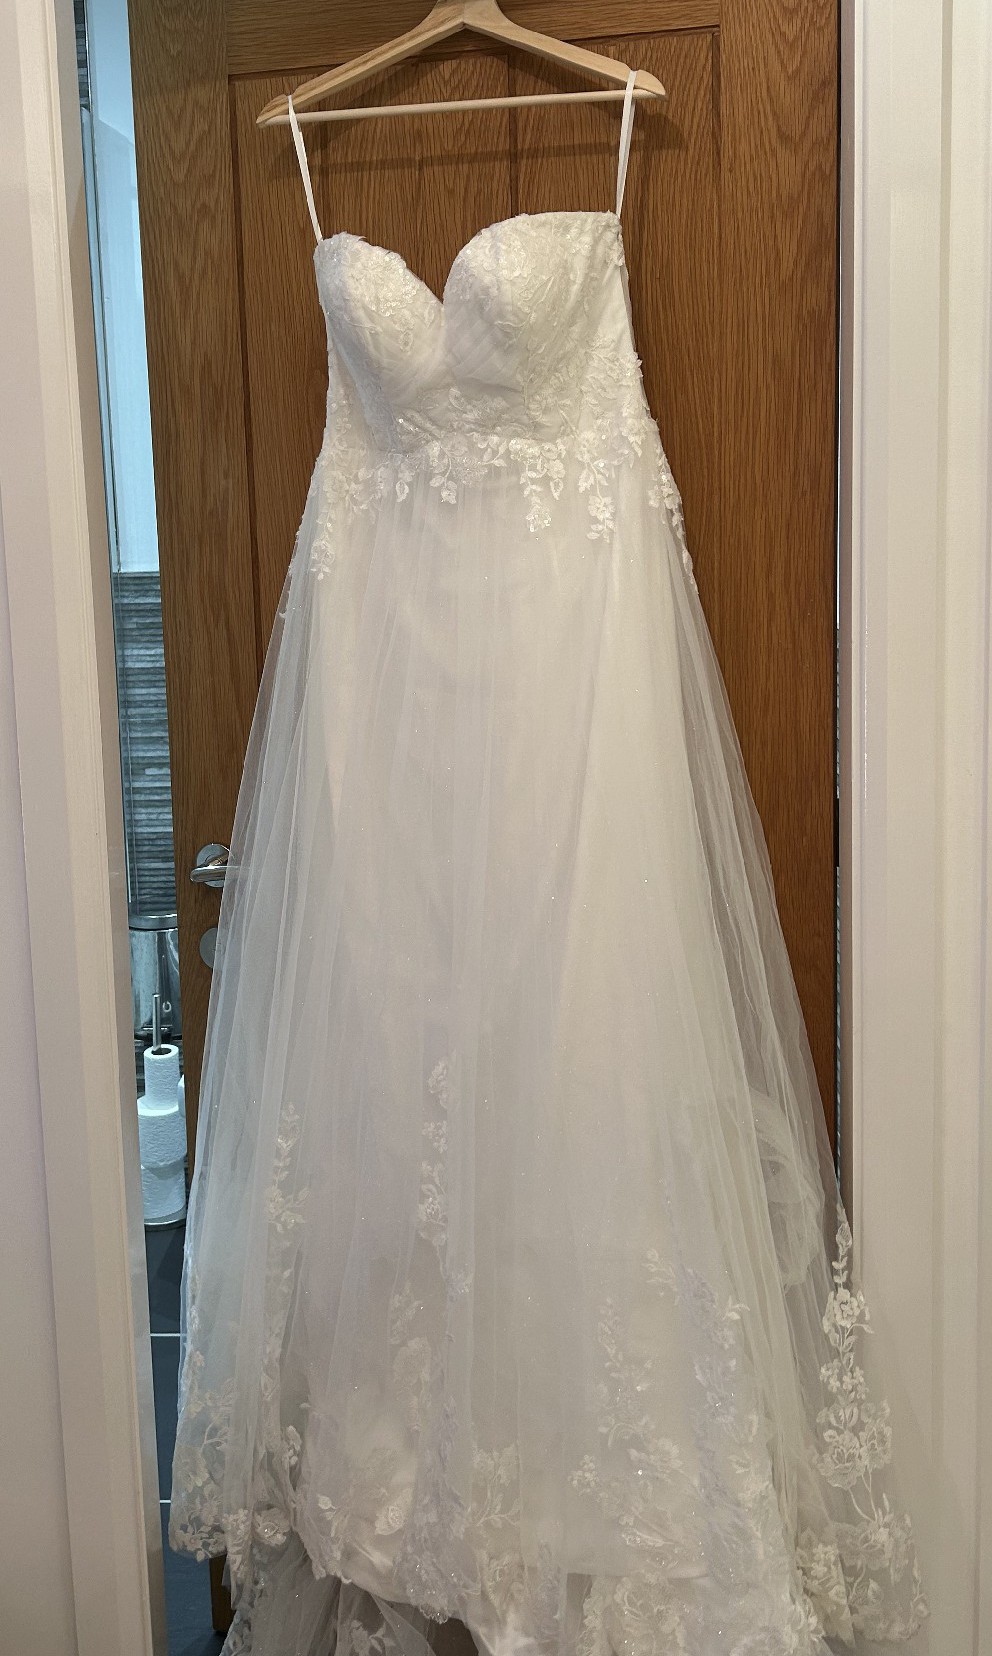 Madi Lane Joelle Wedding Dress Save 65% - Stillwhite